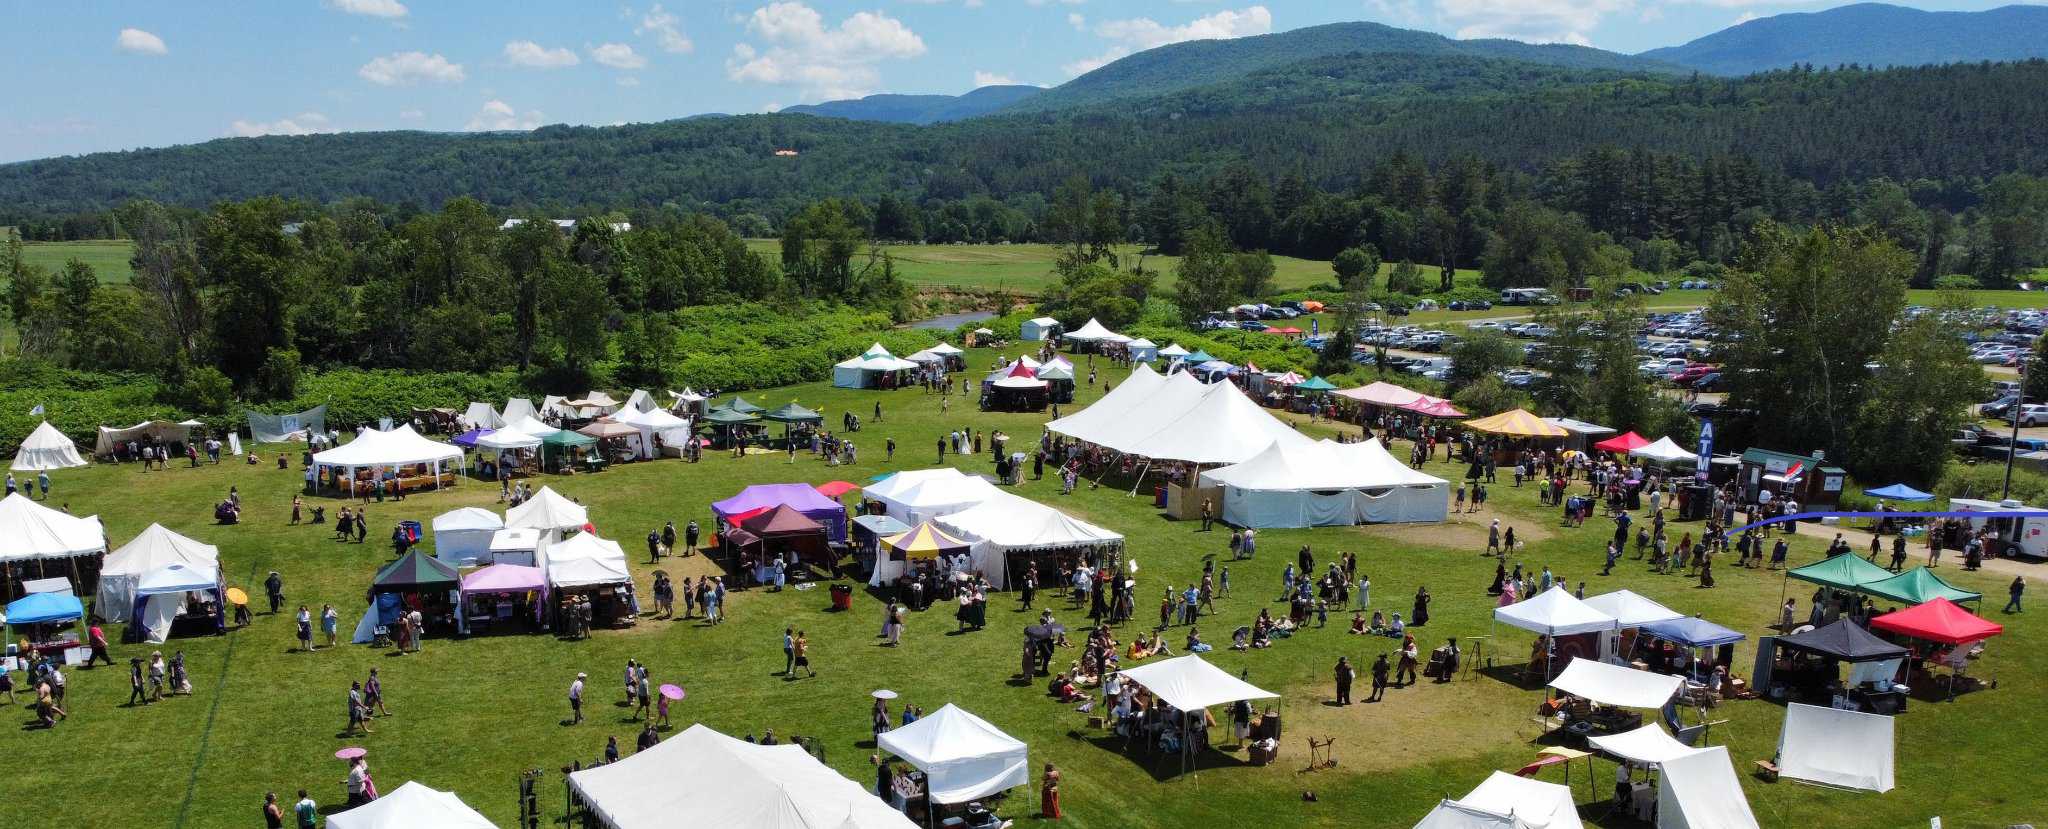 Vermont Gatherings - Renaissance Faire Aerial View